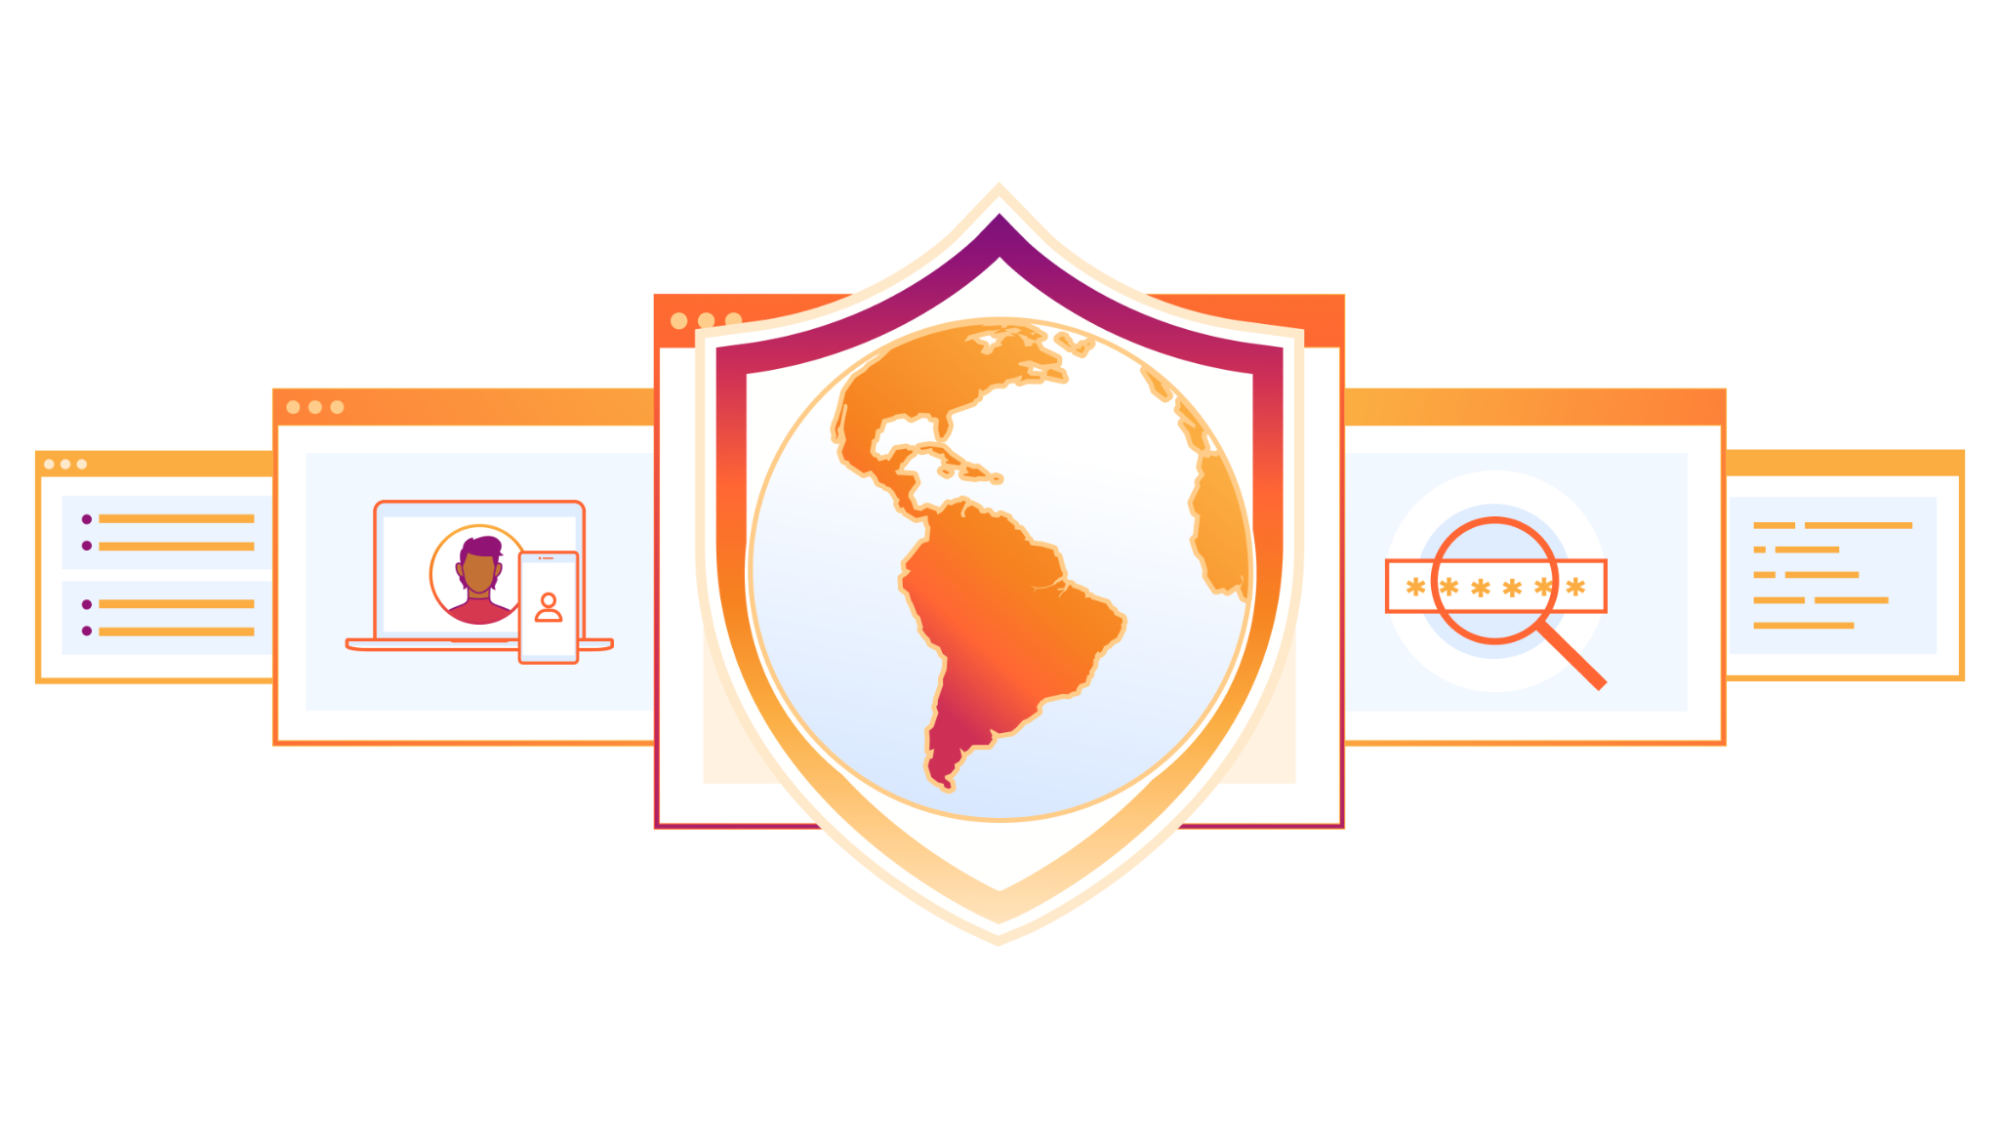 セキュリティセンター内の保護されていないアセットを保護：最高情報セキュリティ責任者（CISO）のためのクイックビュー